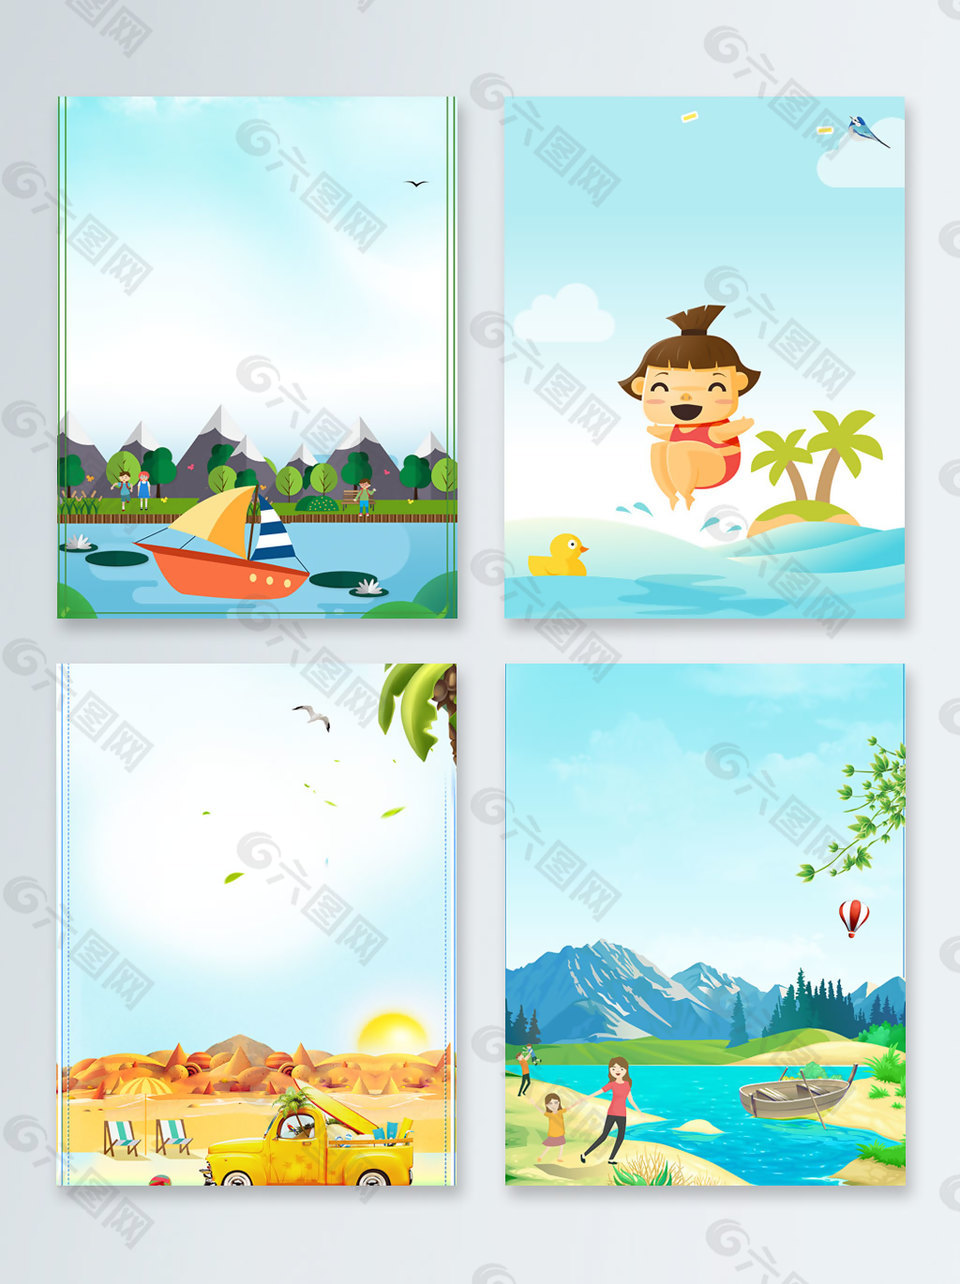 暑期夏季旅游海边度假广告背景